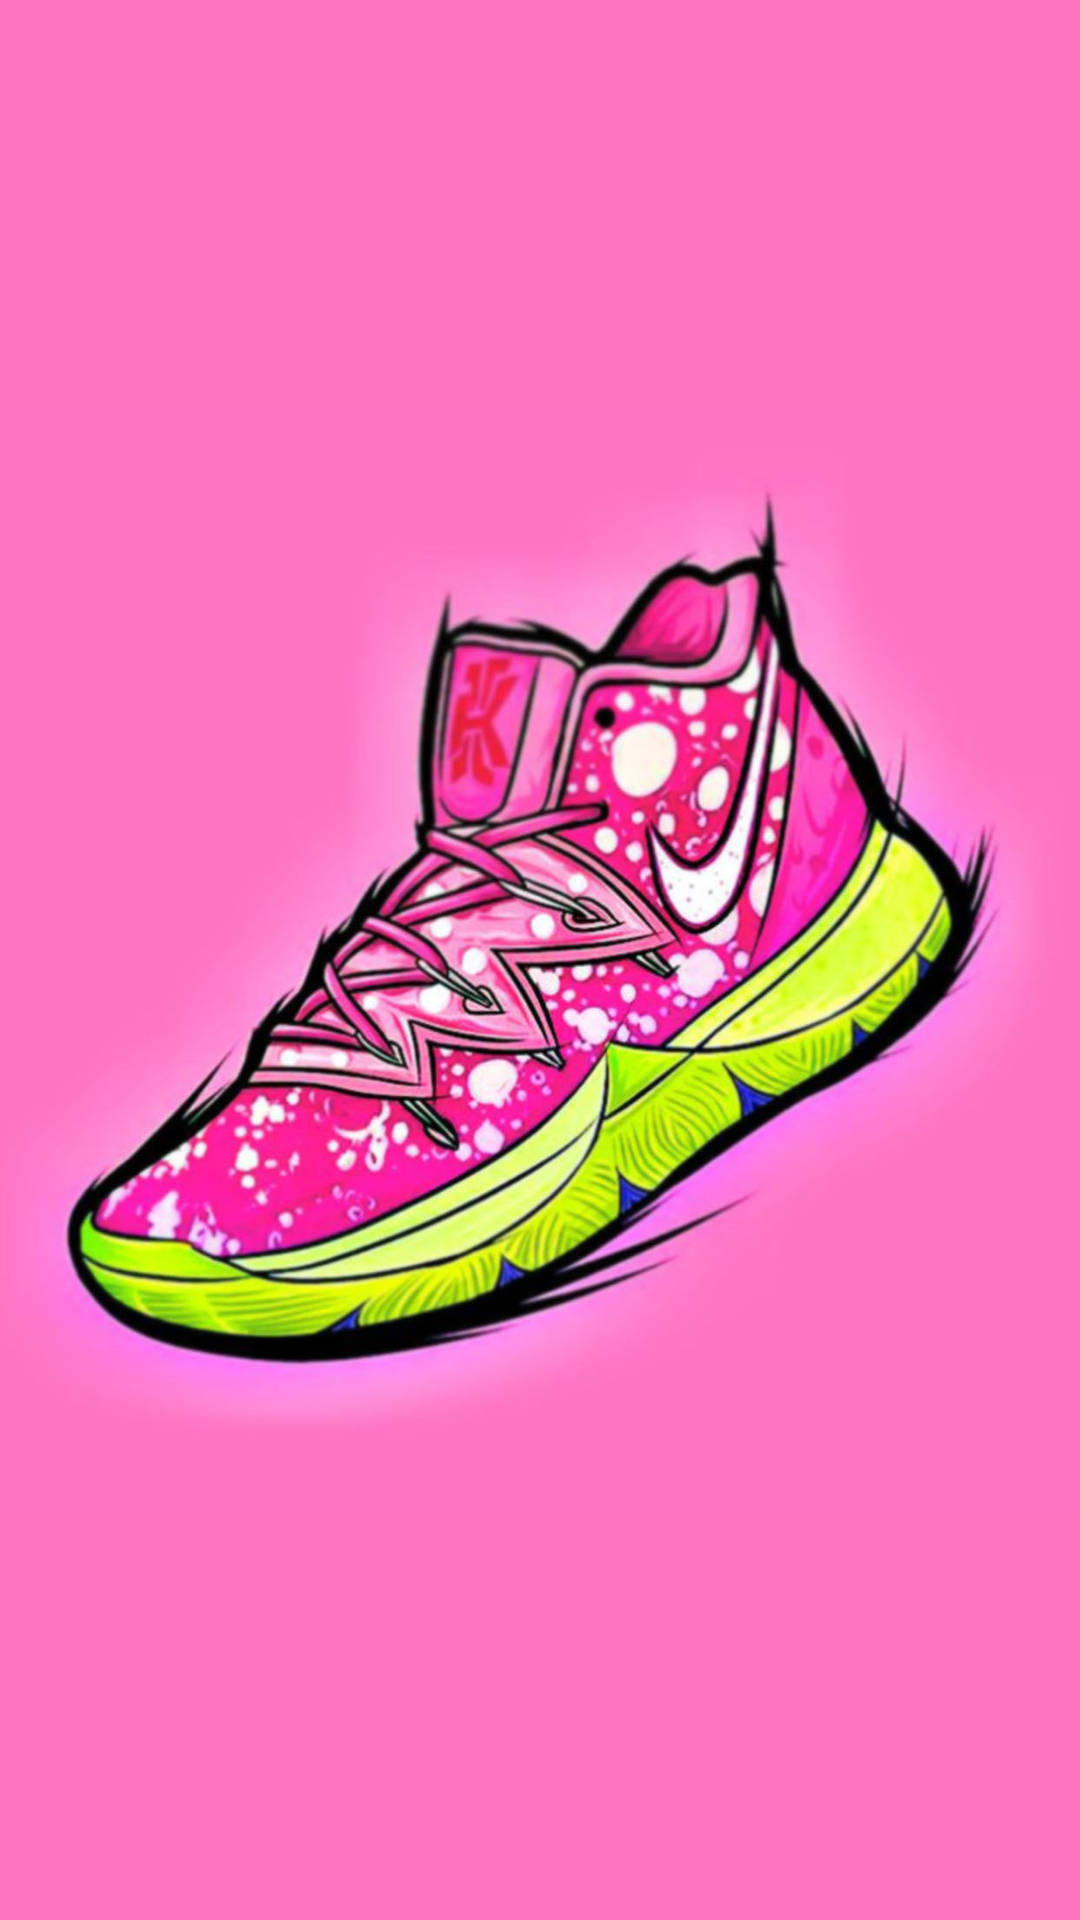 Download Pink Cartoon Shoe Wallpaper | Wallpapers.com